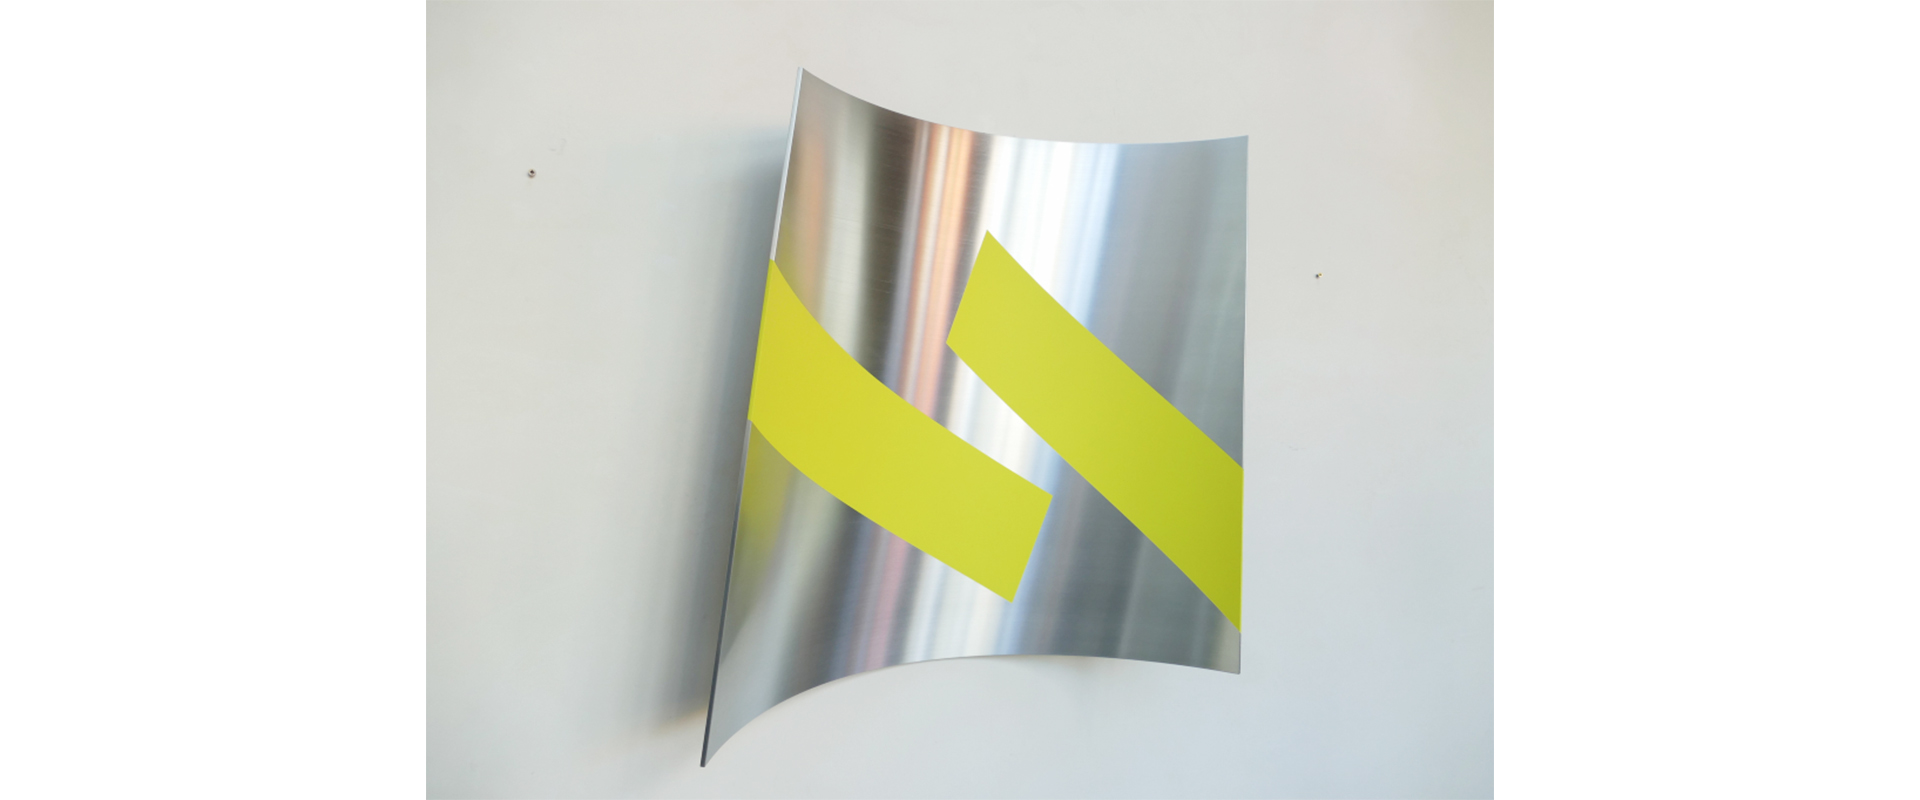 Raumzeichen #477 – 2021, Lack auf Aluminium, 78 x 80 x 8 cm